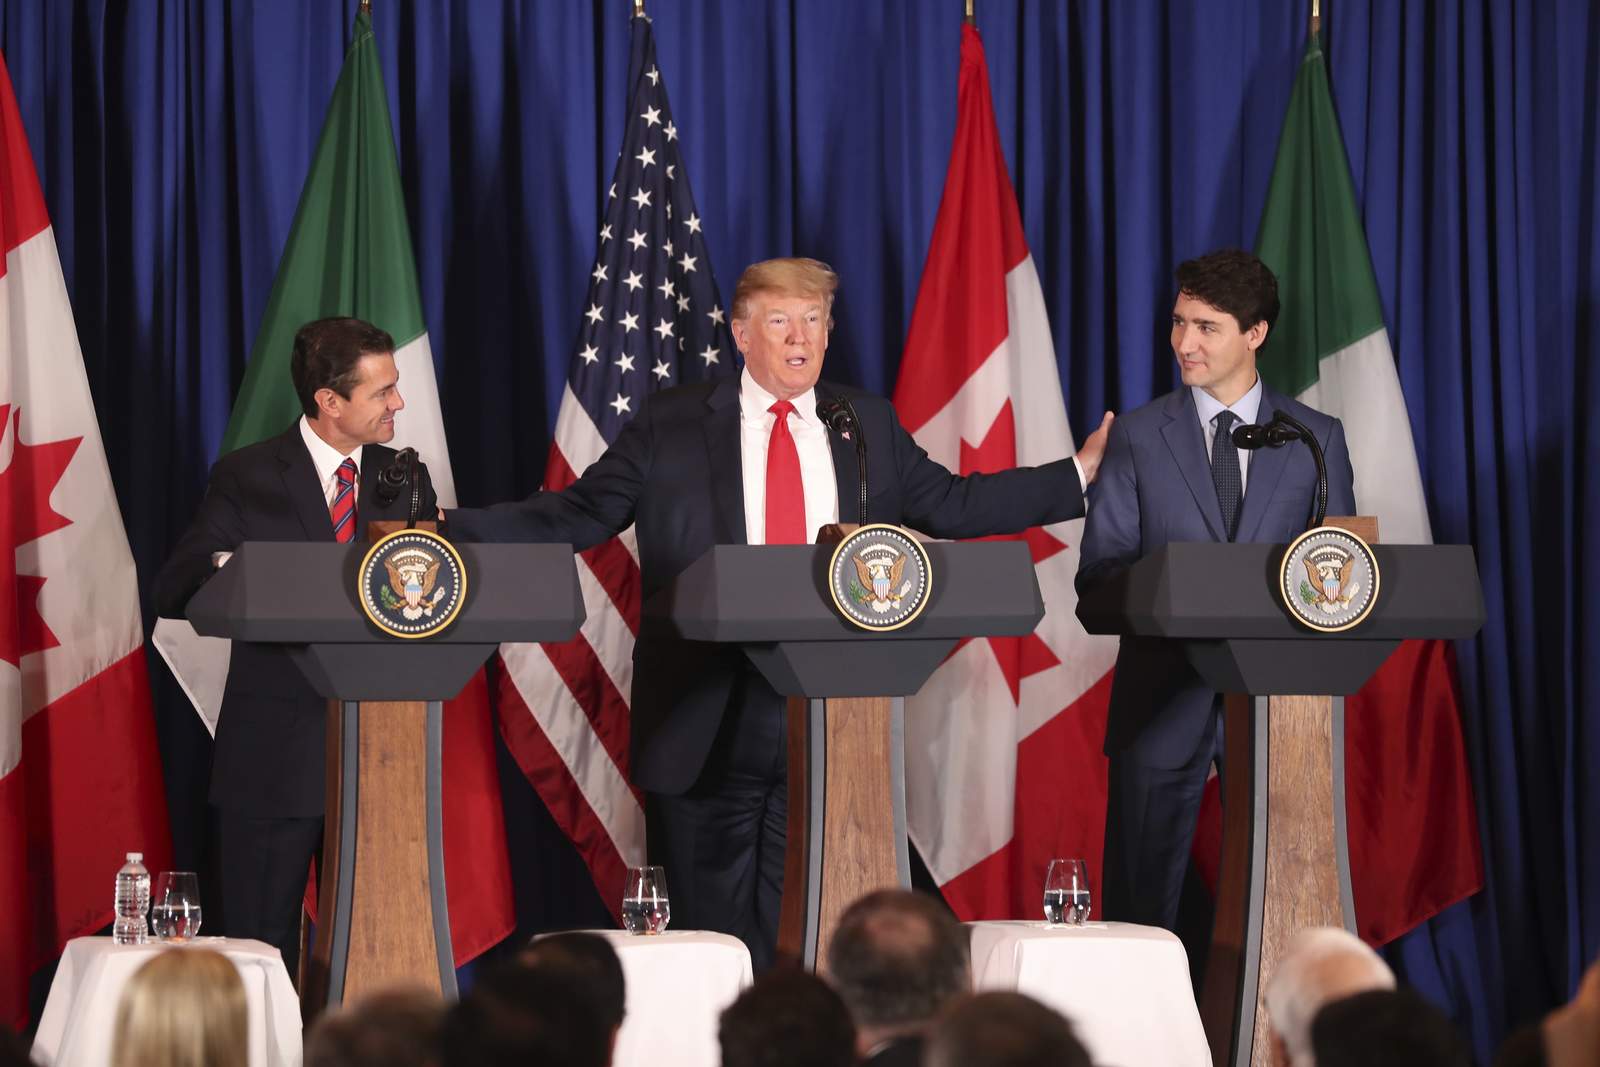 'Este es un acuerdo modélico que cambia para siempre el panorama comercial', afirmó Trump durante el acto de firma del tratado en Buenos Aires. (AP)